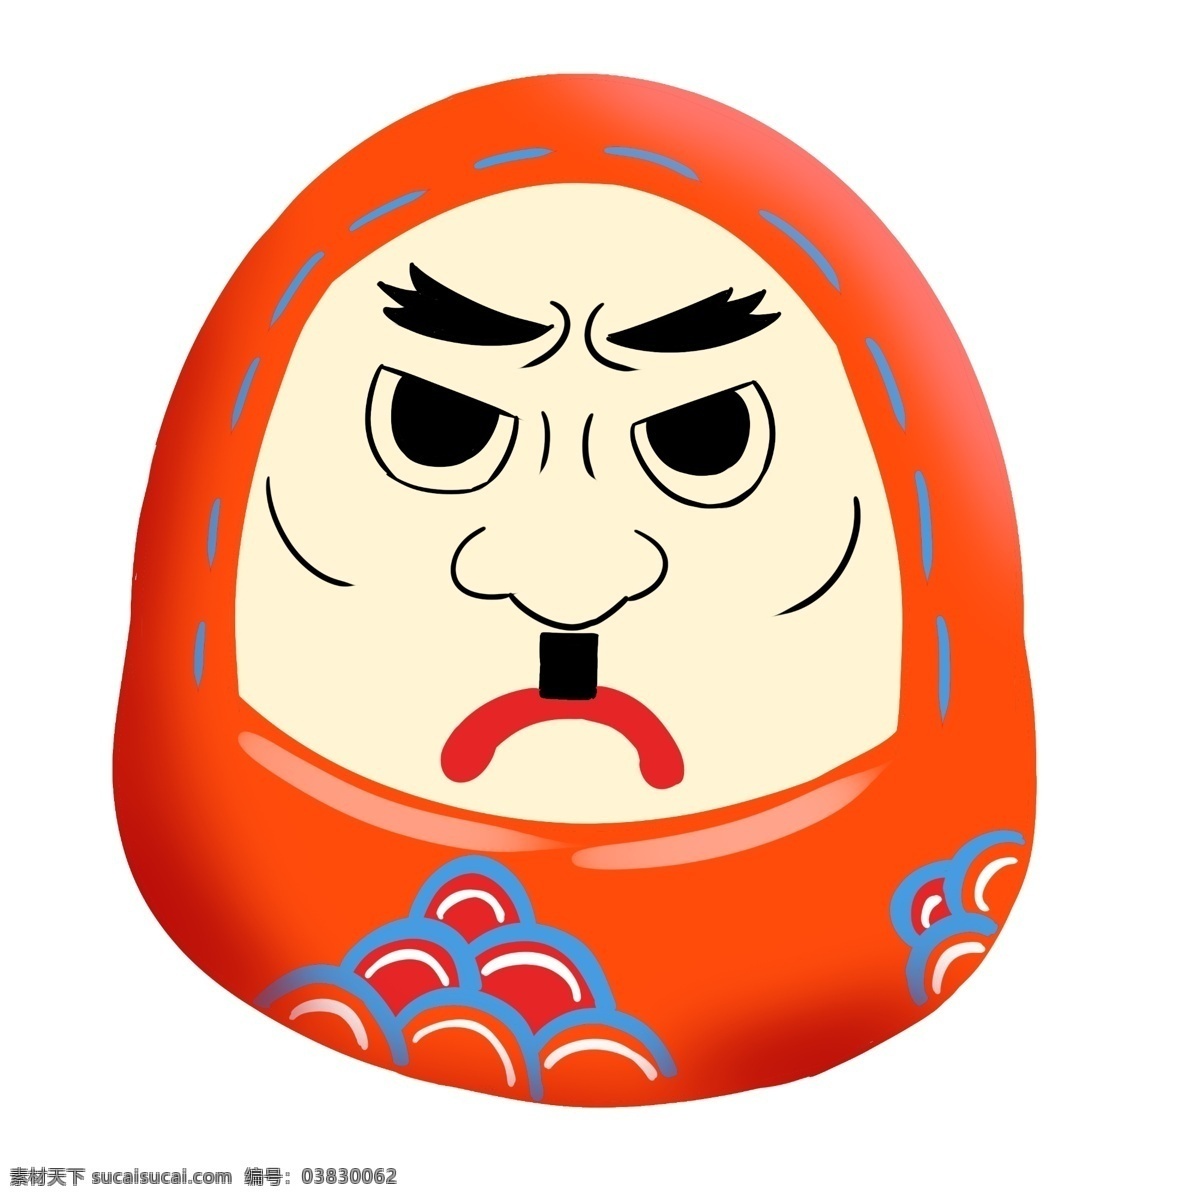 橘 色 脸谱 日本 插画 橘色的脸谱 卡通插画 漂亮的脸谱 日本插画 日本脸谱 脸谱插画 日本玩具